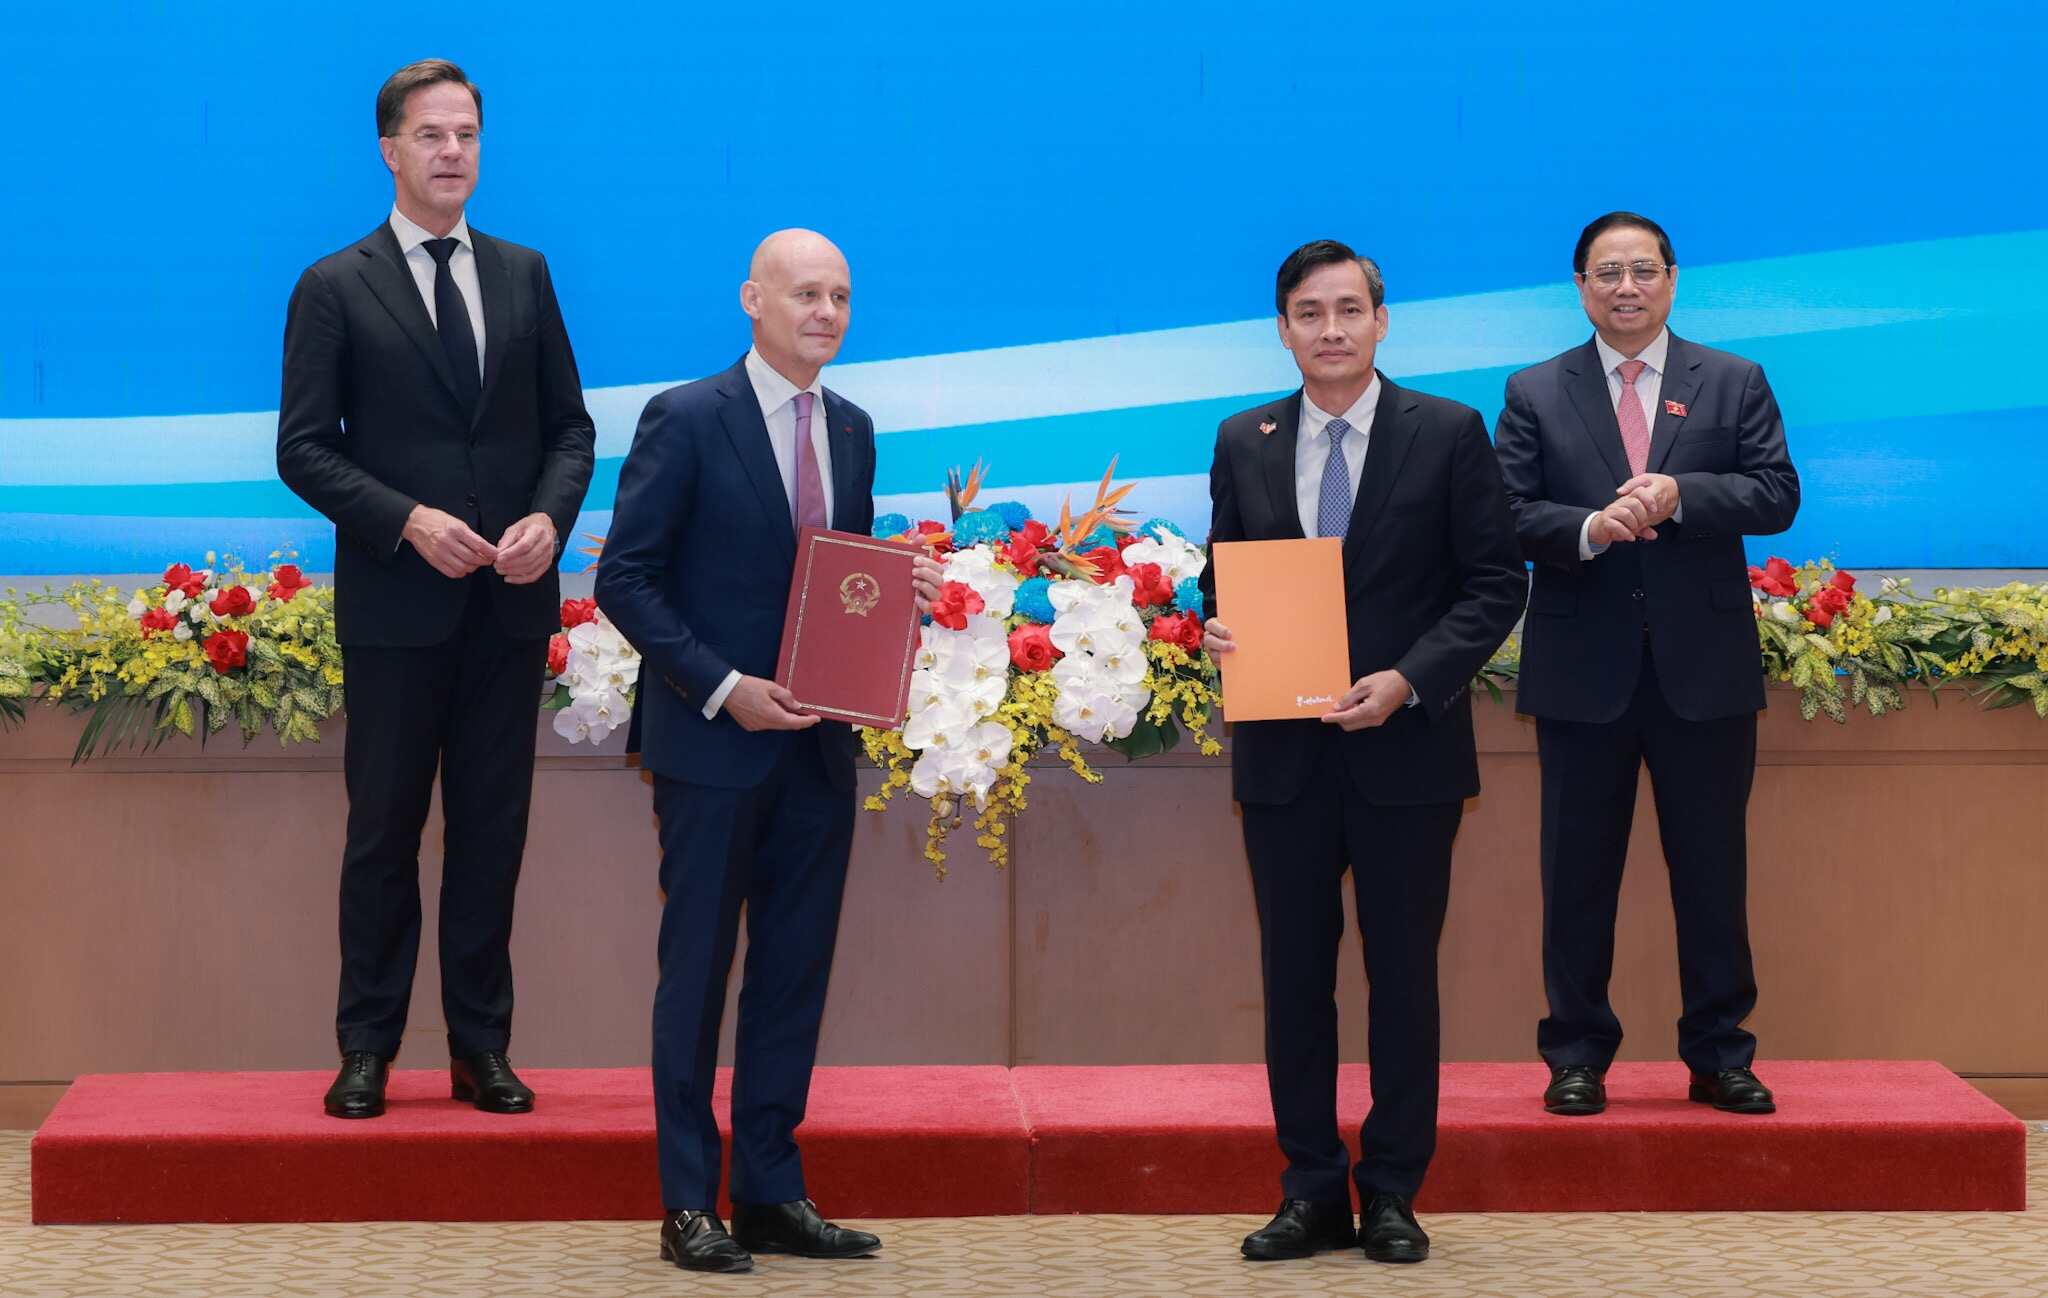 Thứ trưởng Bộ Tài nguyên và Môi trường Trần Quý Kiên và Đại sứ Hà Lan tại Việt Nam Kees van Baar trao Ý định thư về hợp tác thăm dò và khai thác bền vững các khoáng sản quan trọng. Ảnh: VGP